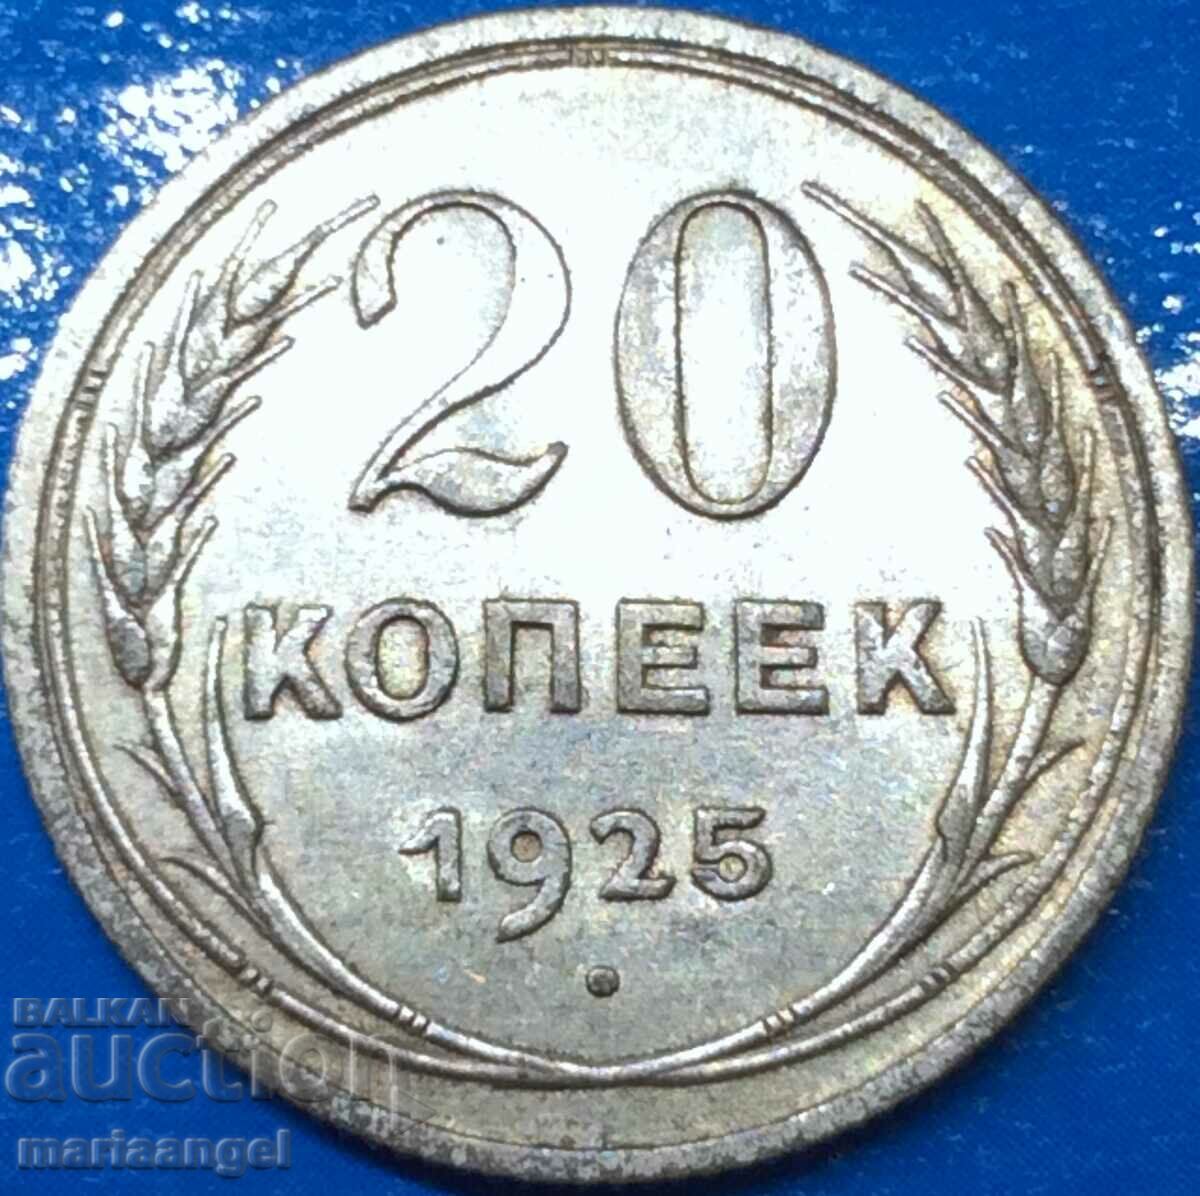 20 kopecks 1925 Russia USSR silver